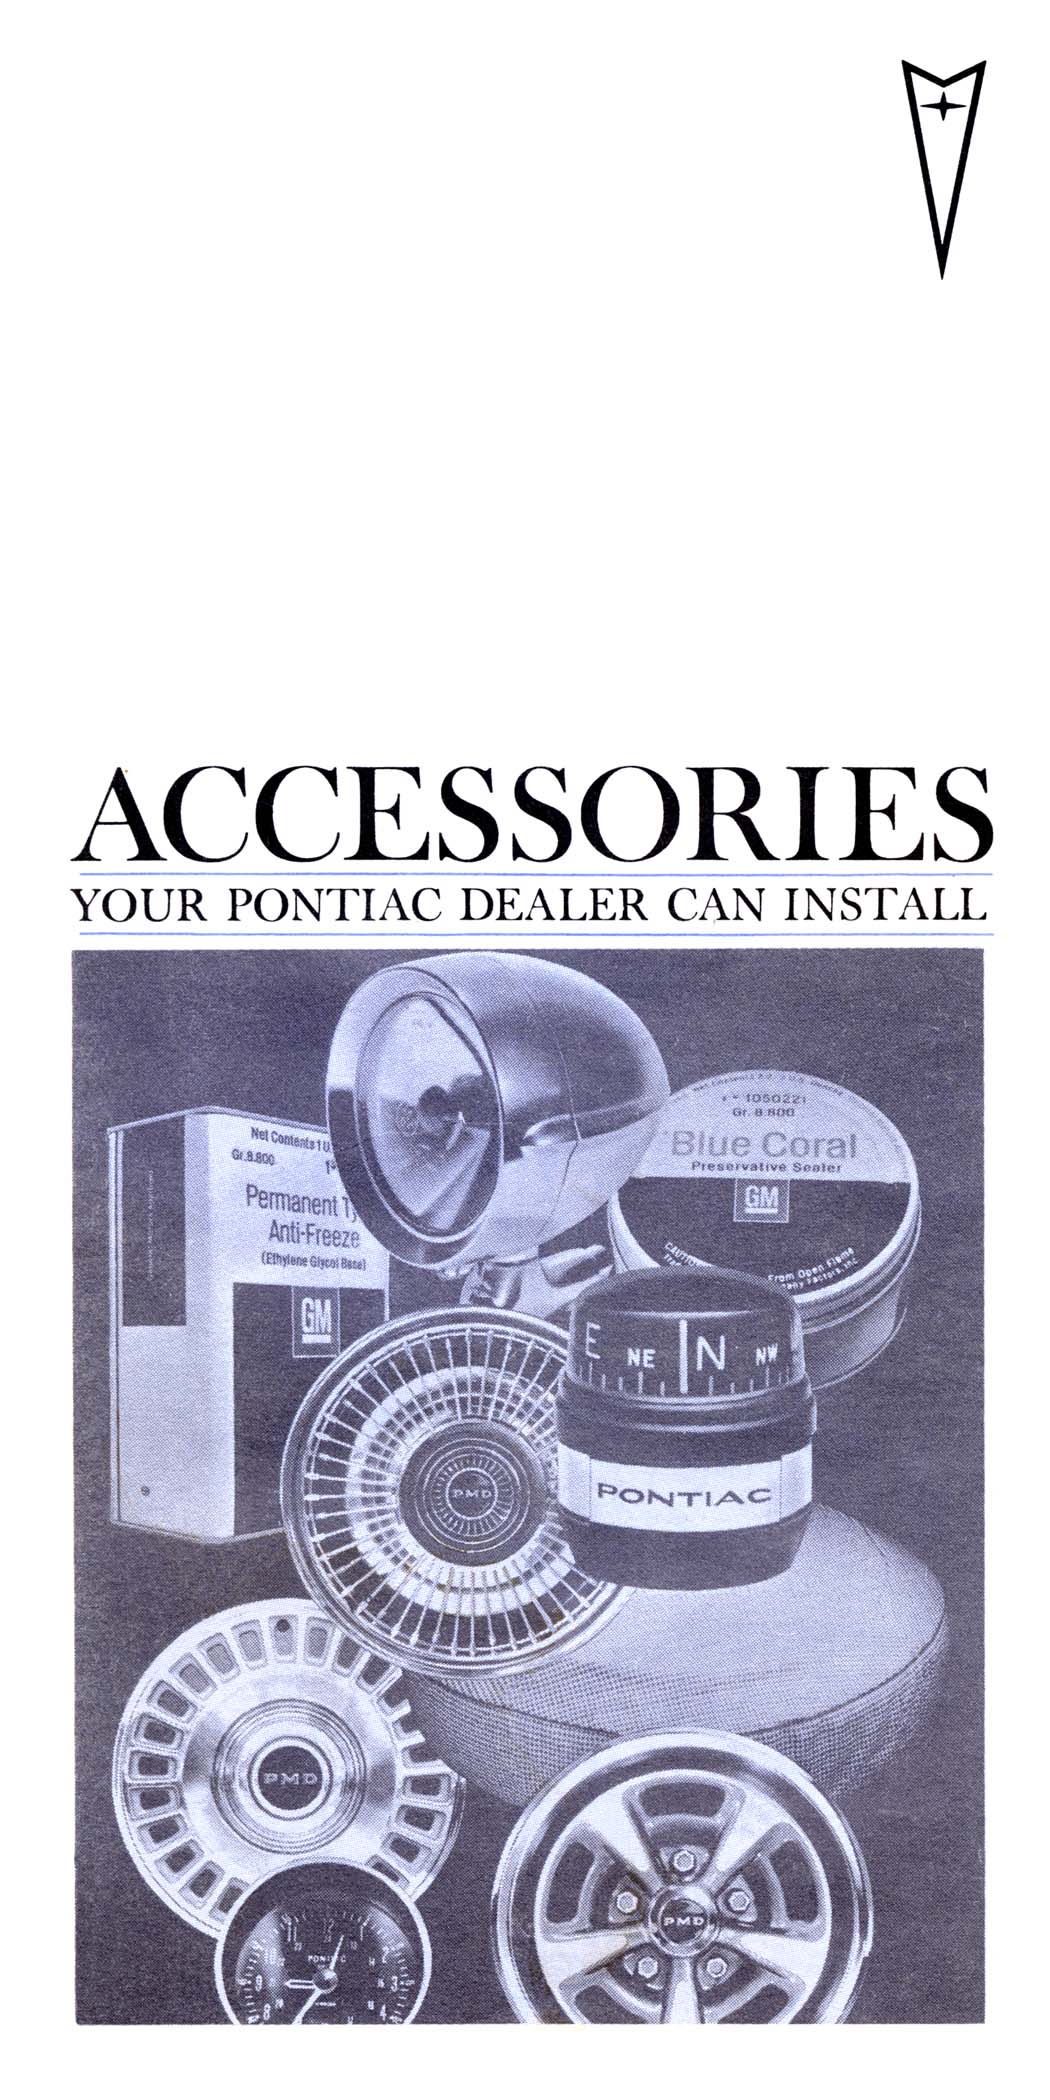 1967_Pontiac_Accessories_Pocket_Catalog-00